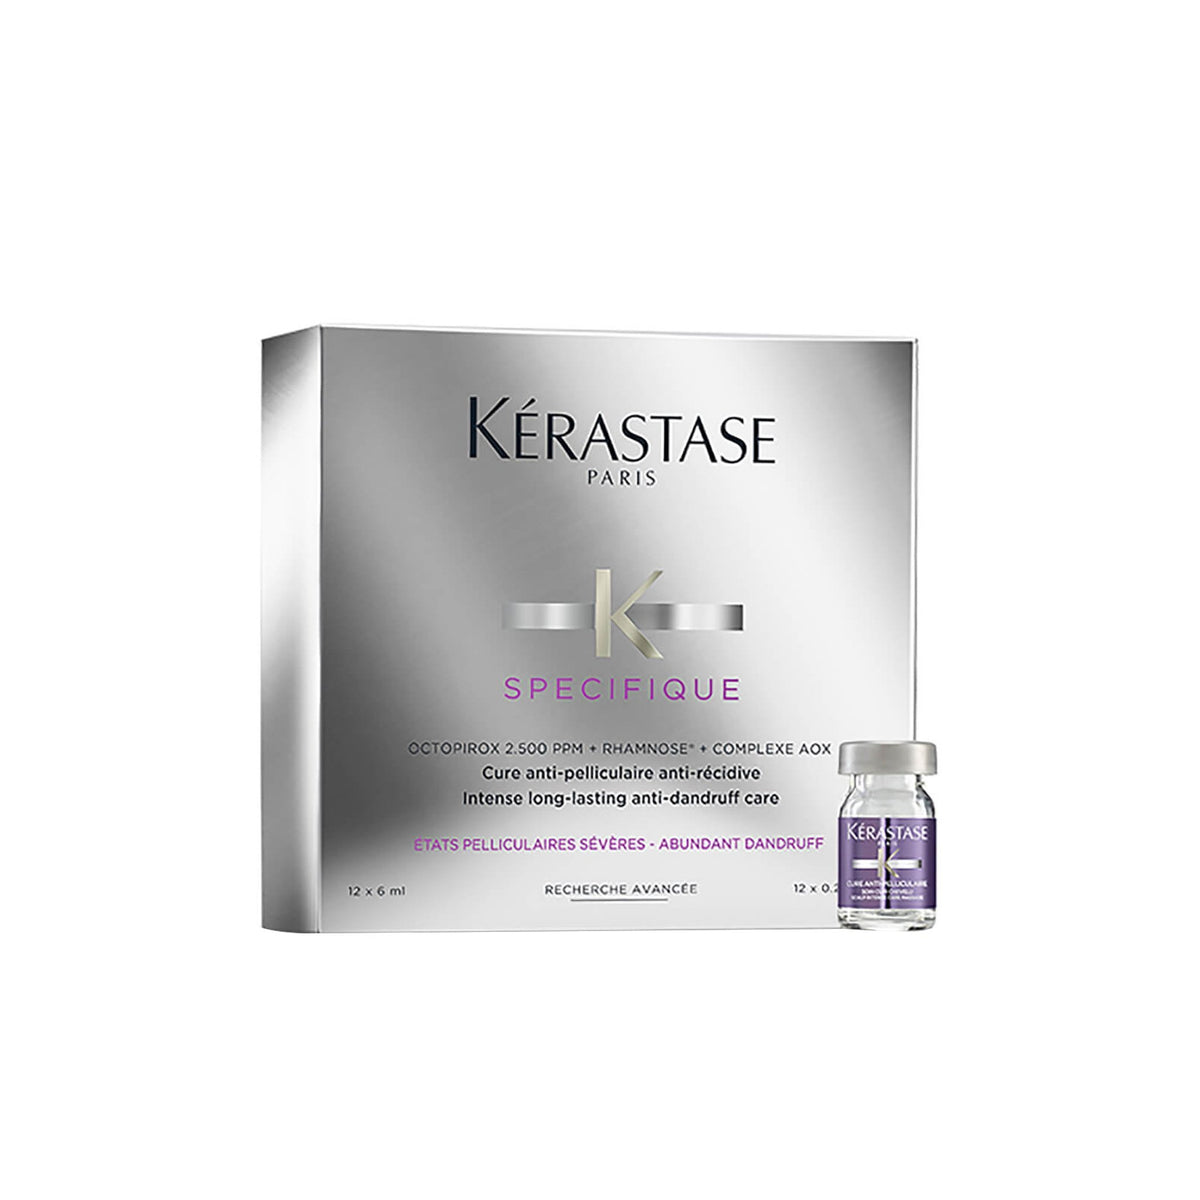 Kerastase Specifique Cure Anti-Pelliculaire Anti-Recidive Treatment 12 X 6ml - Shop online | Retail Box